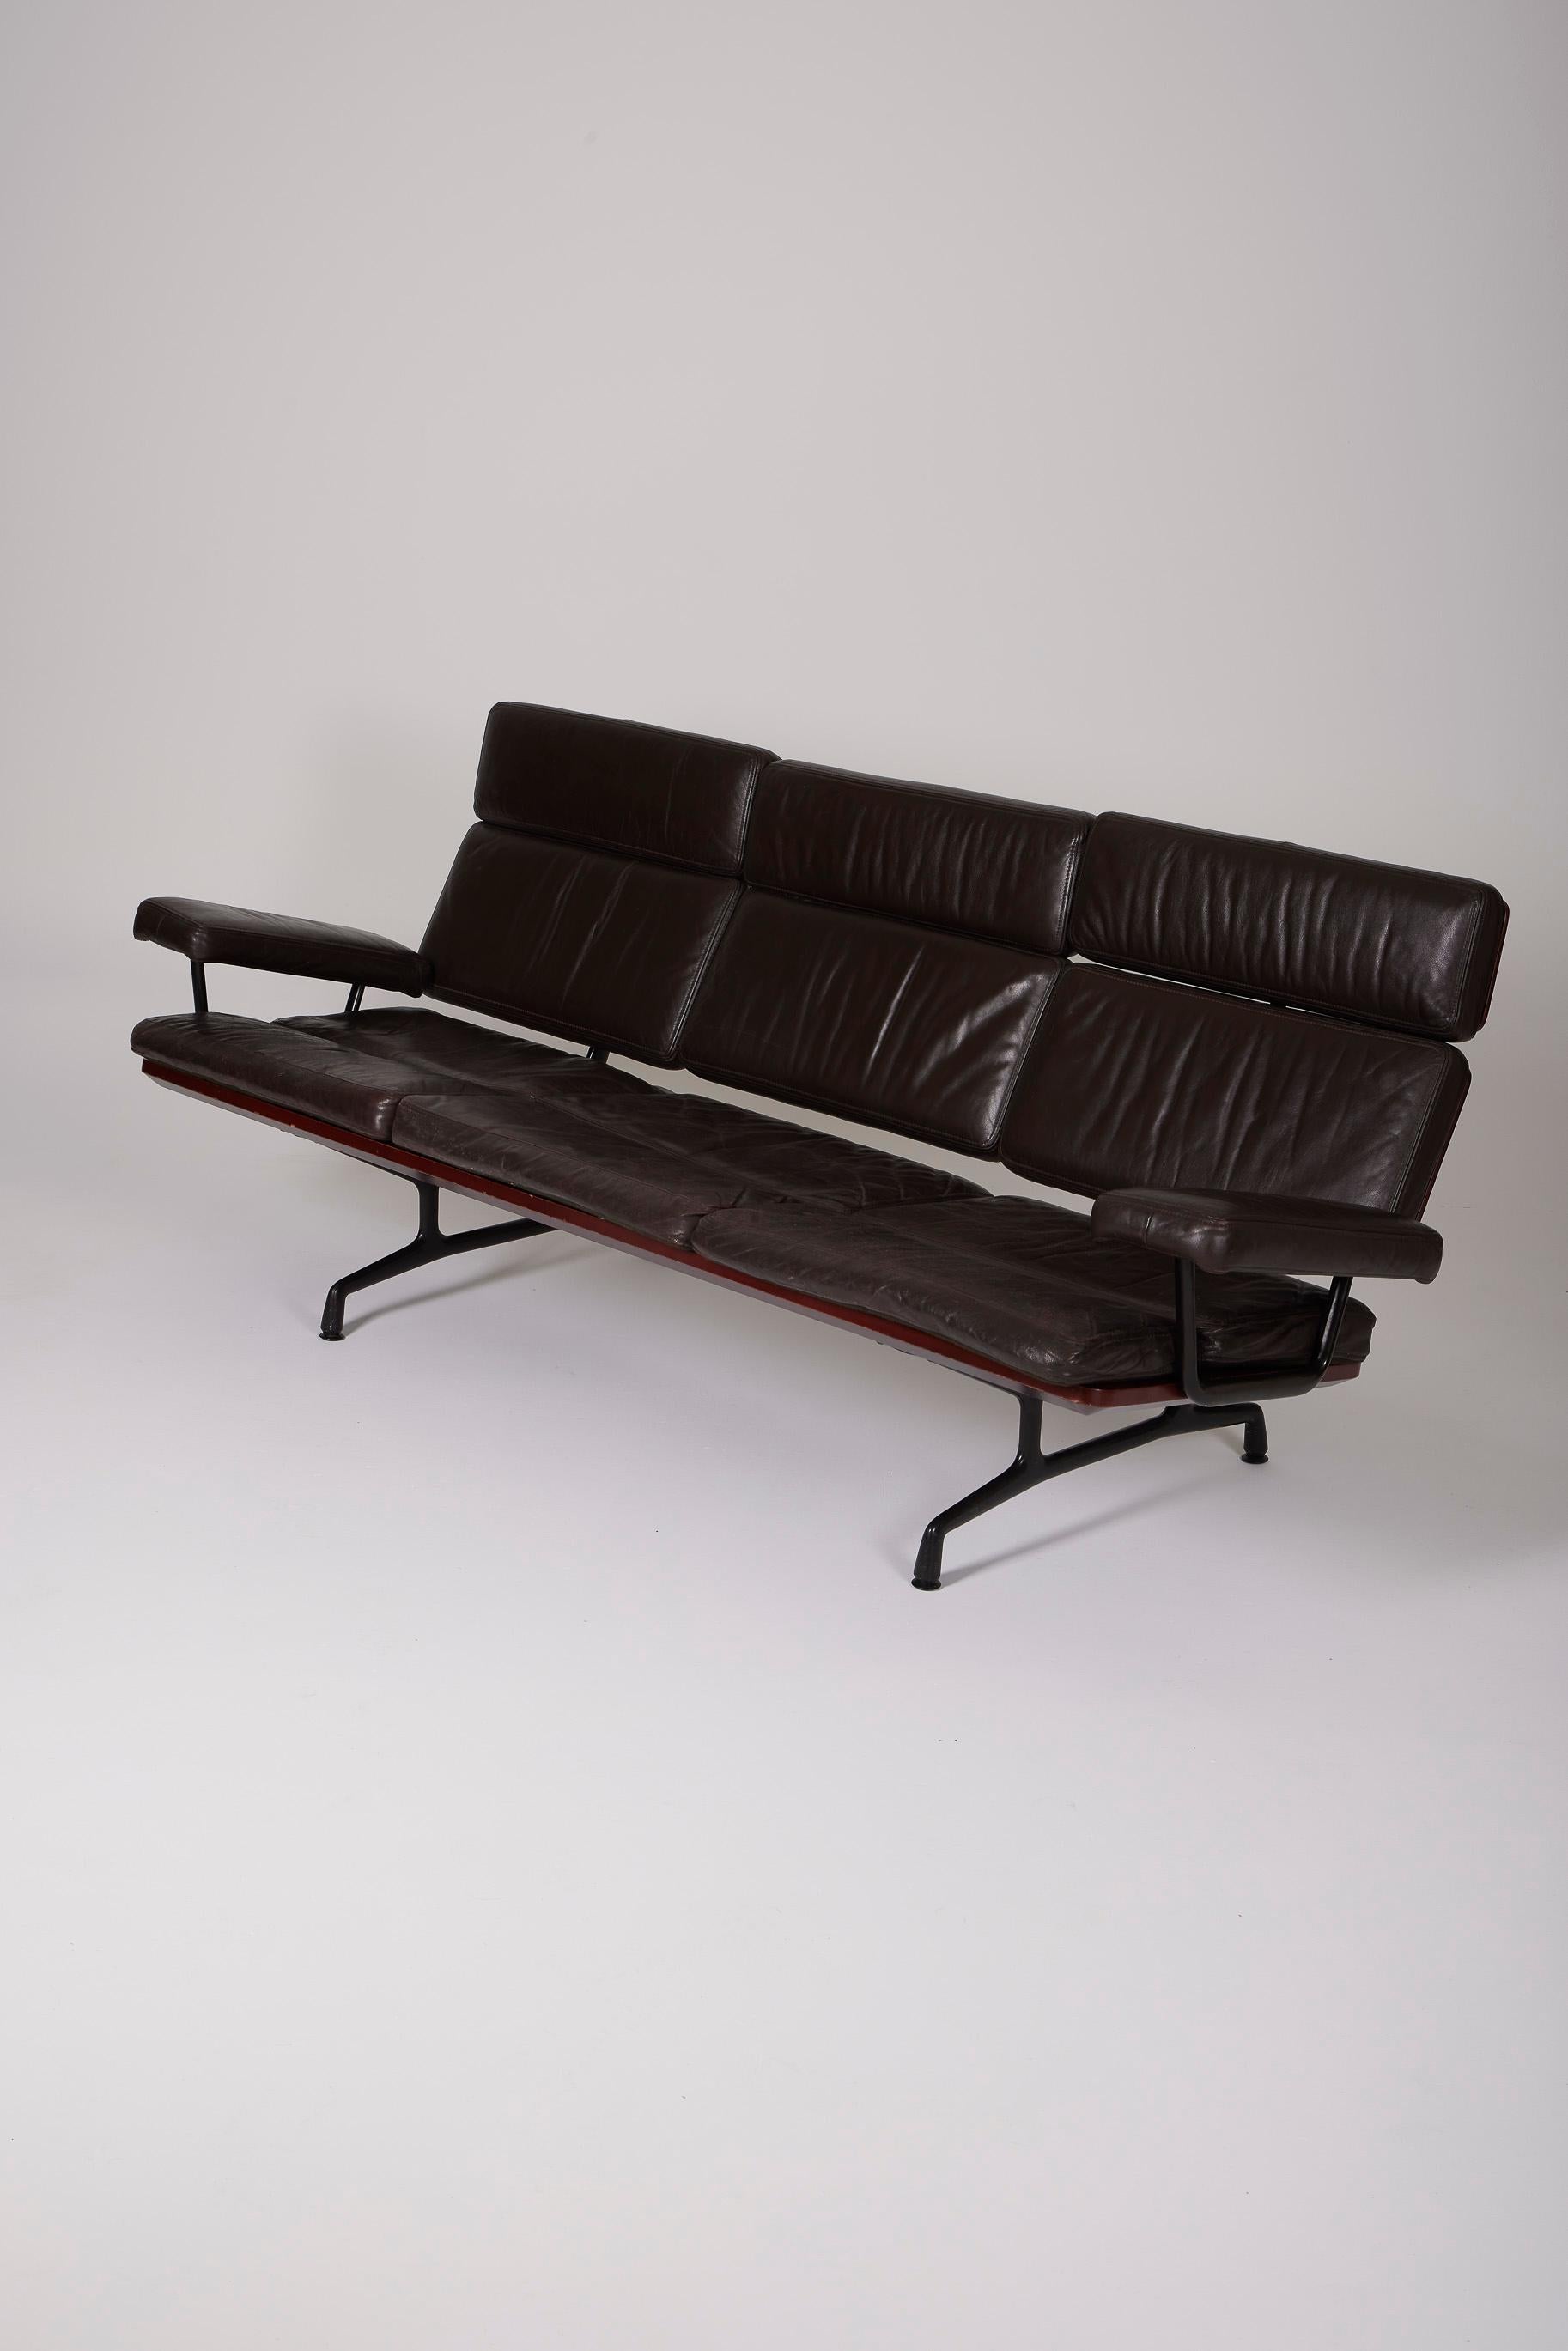 3-Sitzer-Sofa Modell ES108 der Designer Ray und Charles Eames für Herman Miller, 1980er Jahre. Der Sockel besteht aus poliertem Aluminium. Der Sitz und die Rückenlehne sind aus braunem Leder. Das Originalleder ist patiniert. Guter Zustand.
DV528